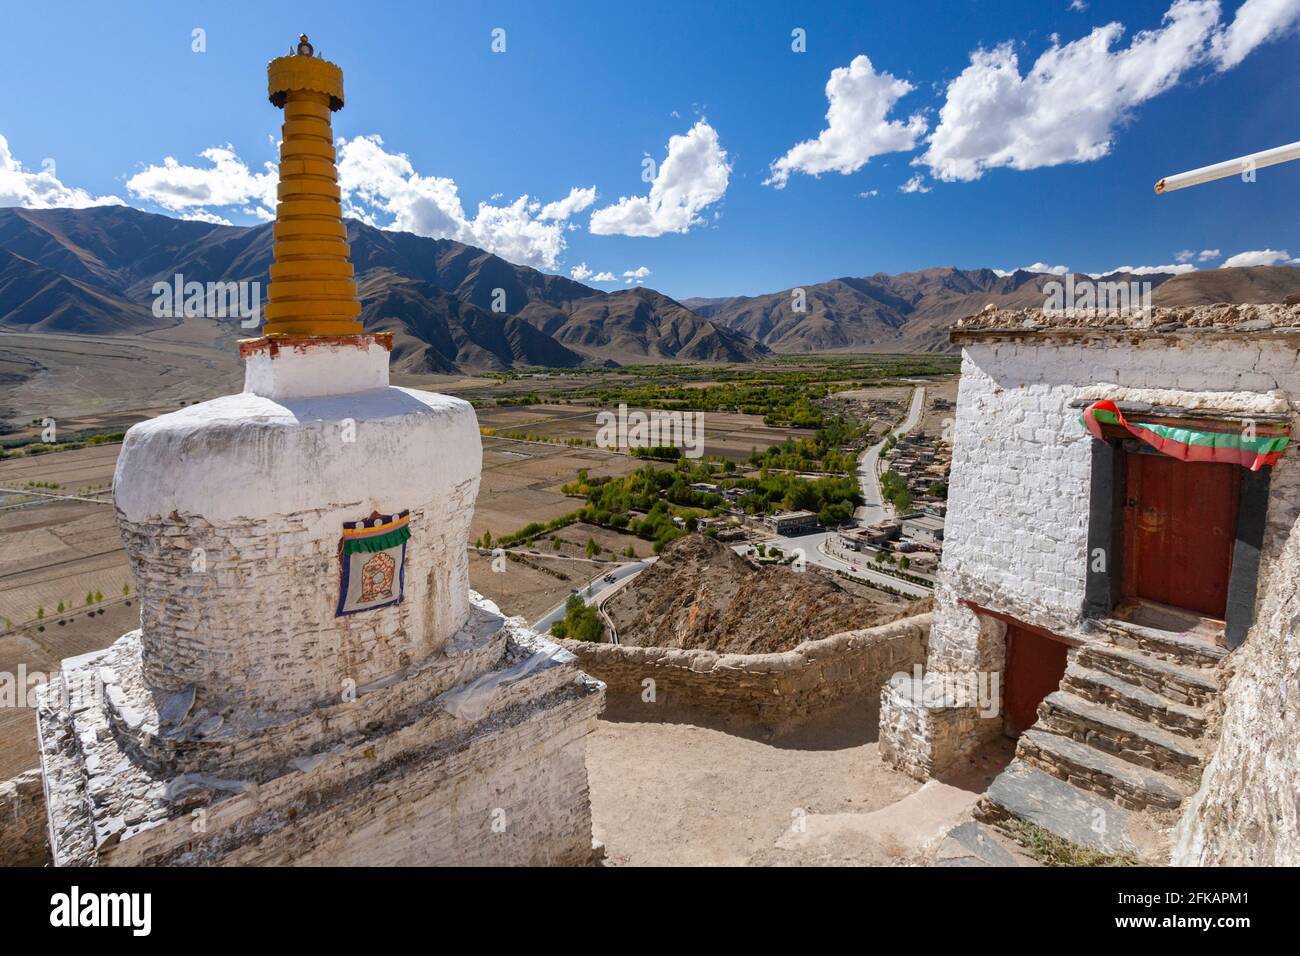 Palais de Yungbulakang ou Yumbu Lakhang, haut sur le plateau tibétain dans l'Himalaya, dans la région autonome du Tibet en Chine. Banque D'Images